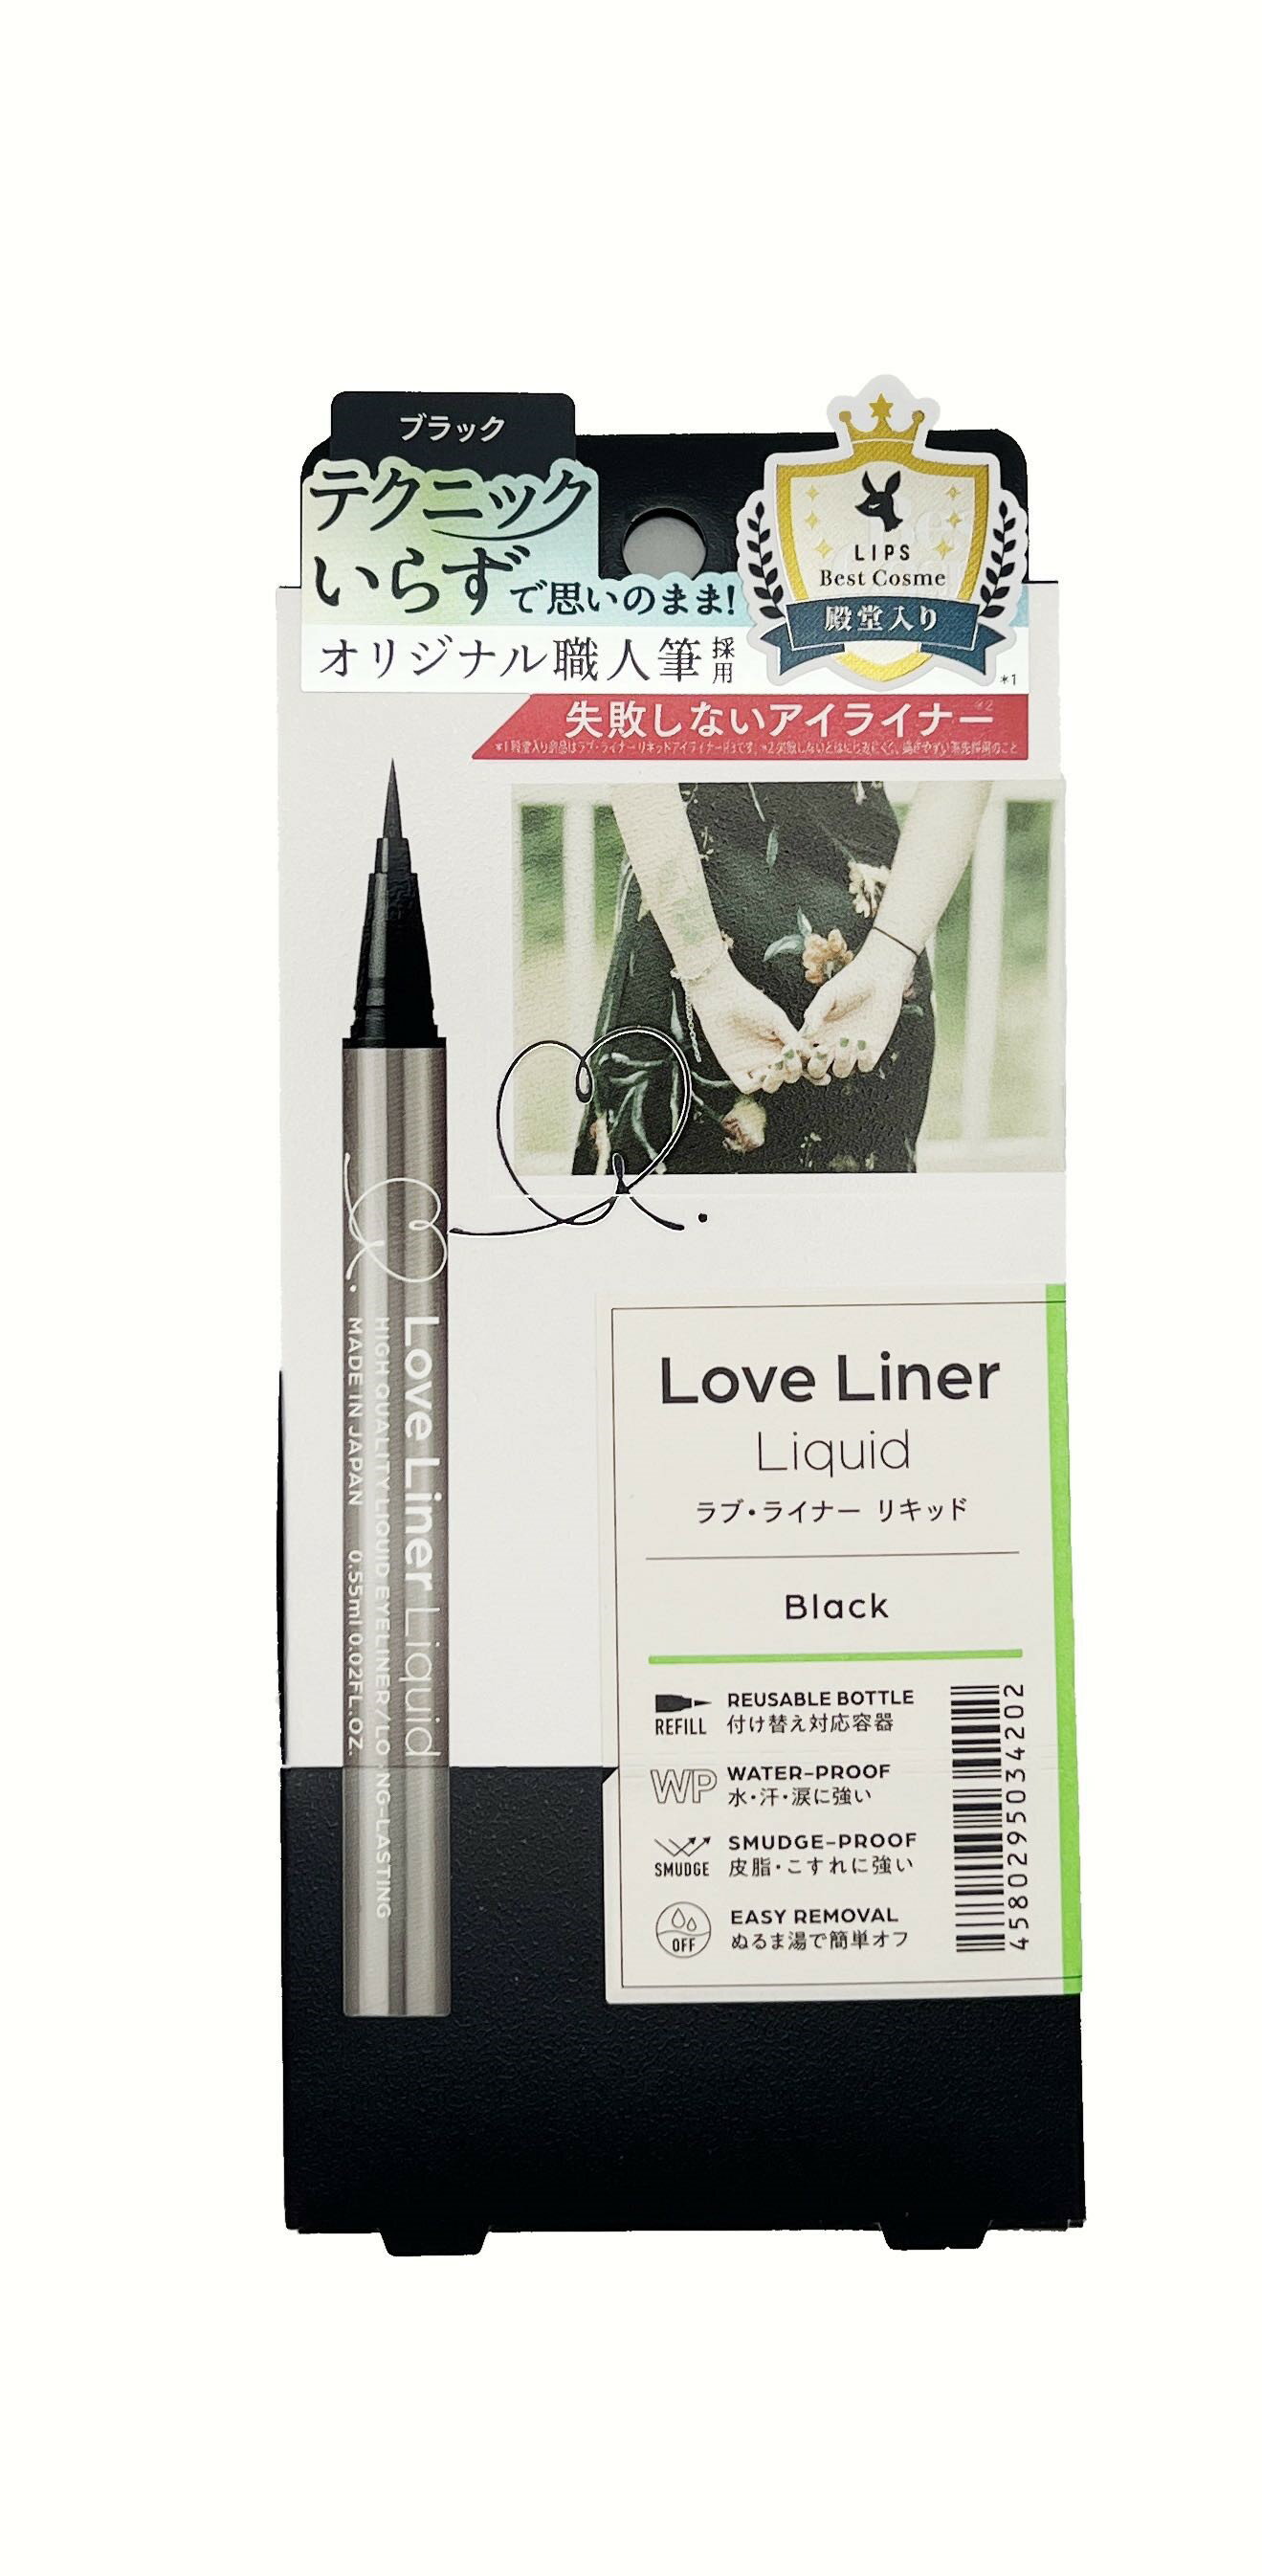 [国内正規品】新品 Love Liner loveliner ラブライナー リキッドアイライナーR4 ブラック メイクアップ アイライナー アイメイク 簡単オフ 目元 耐久性